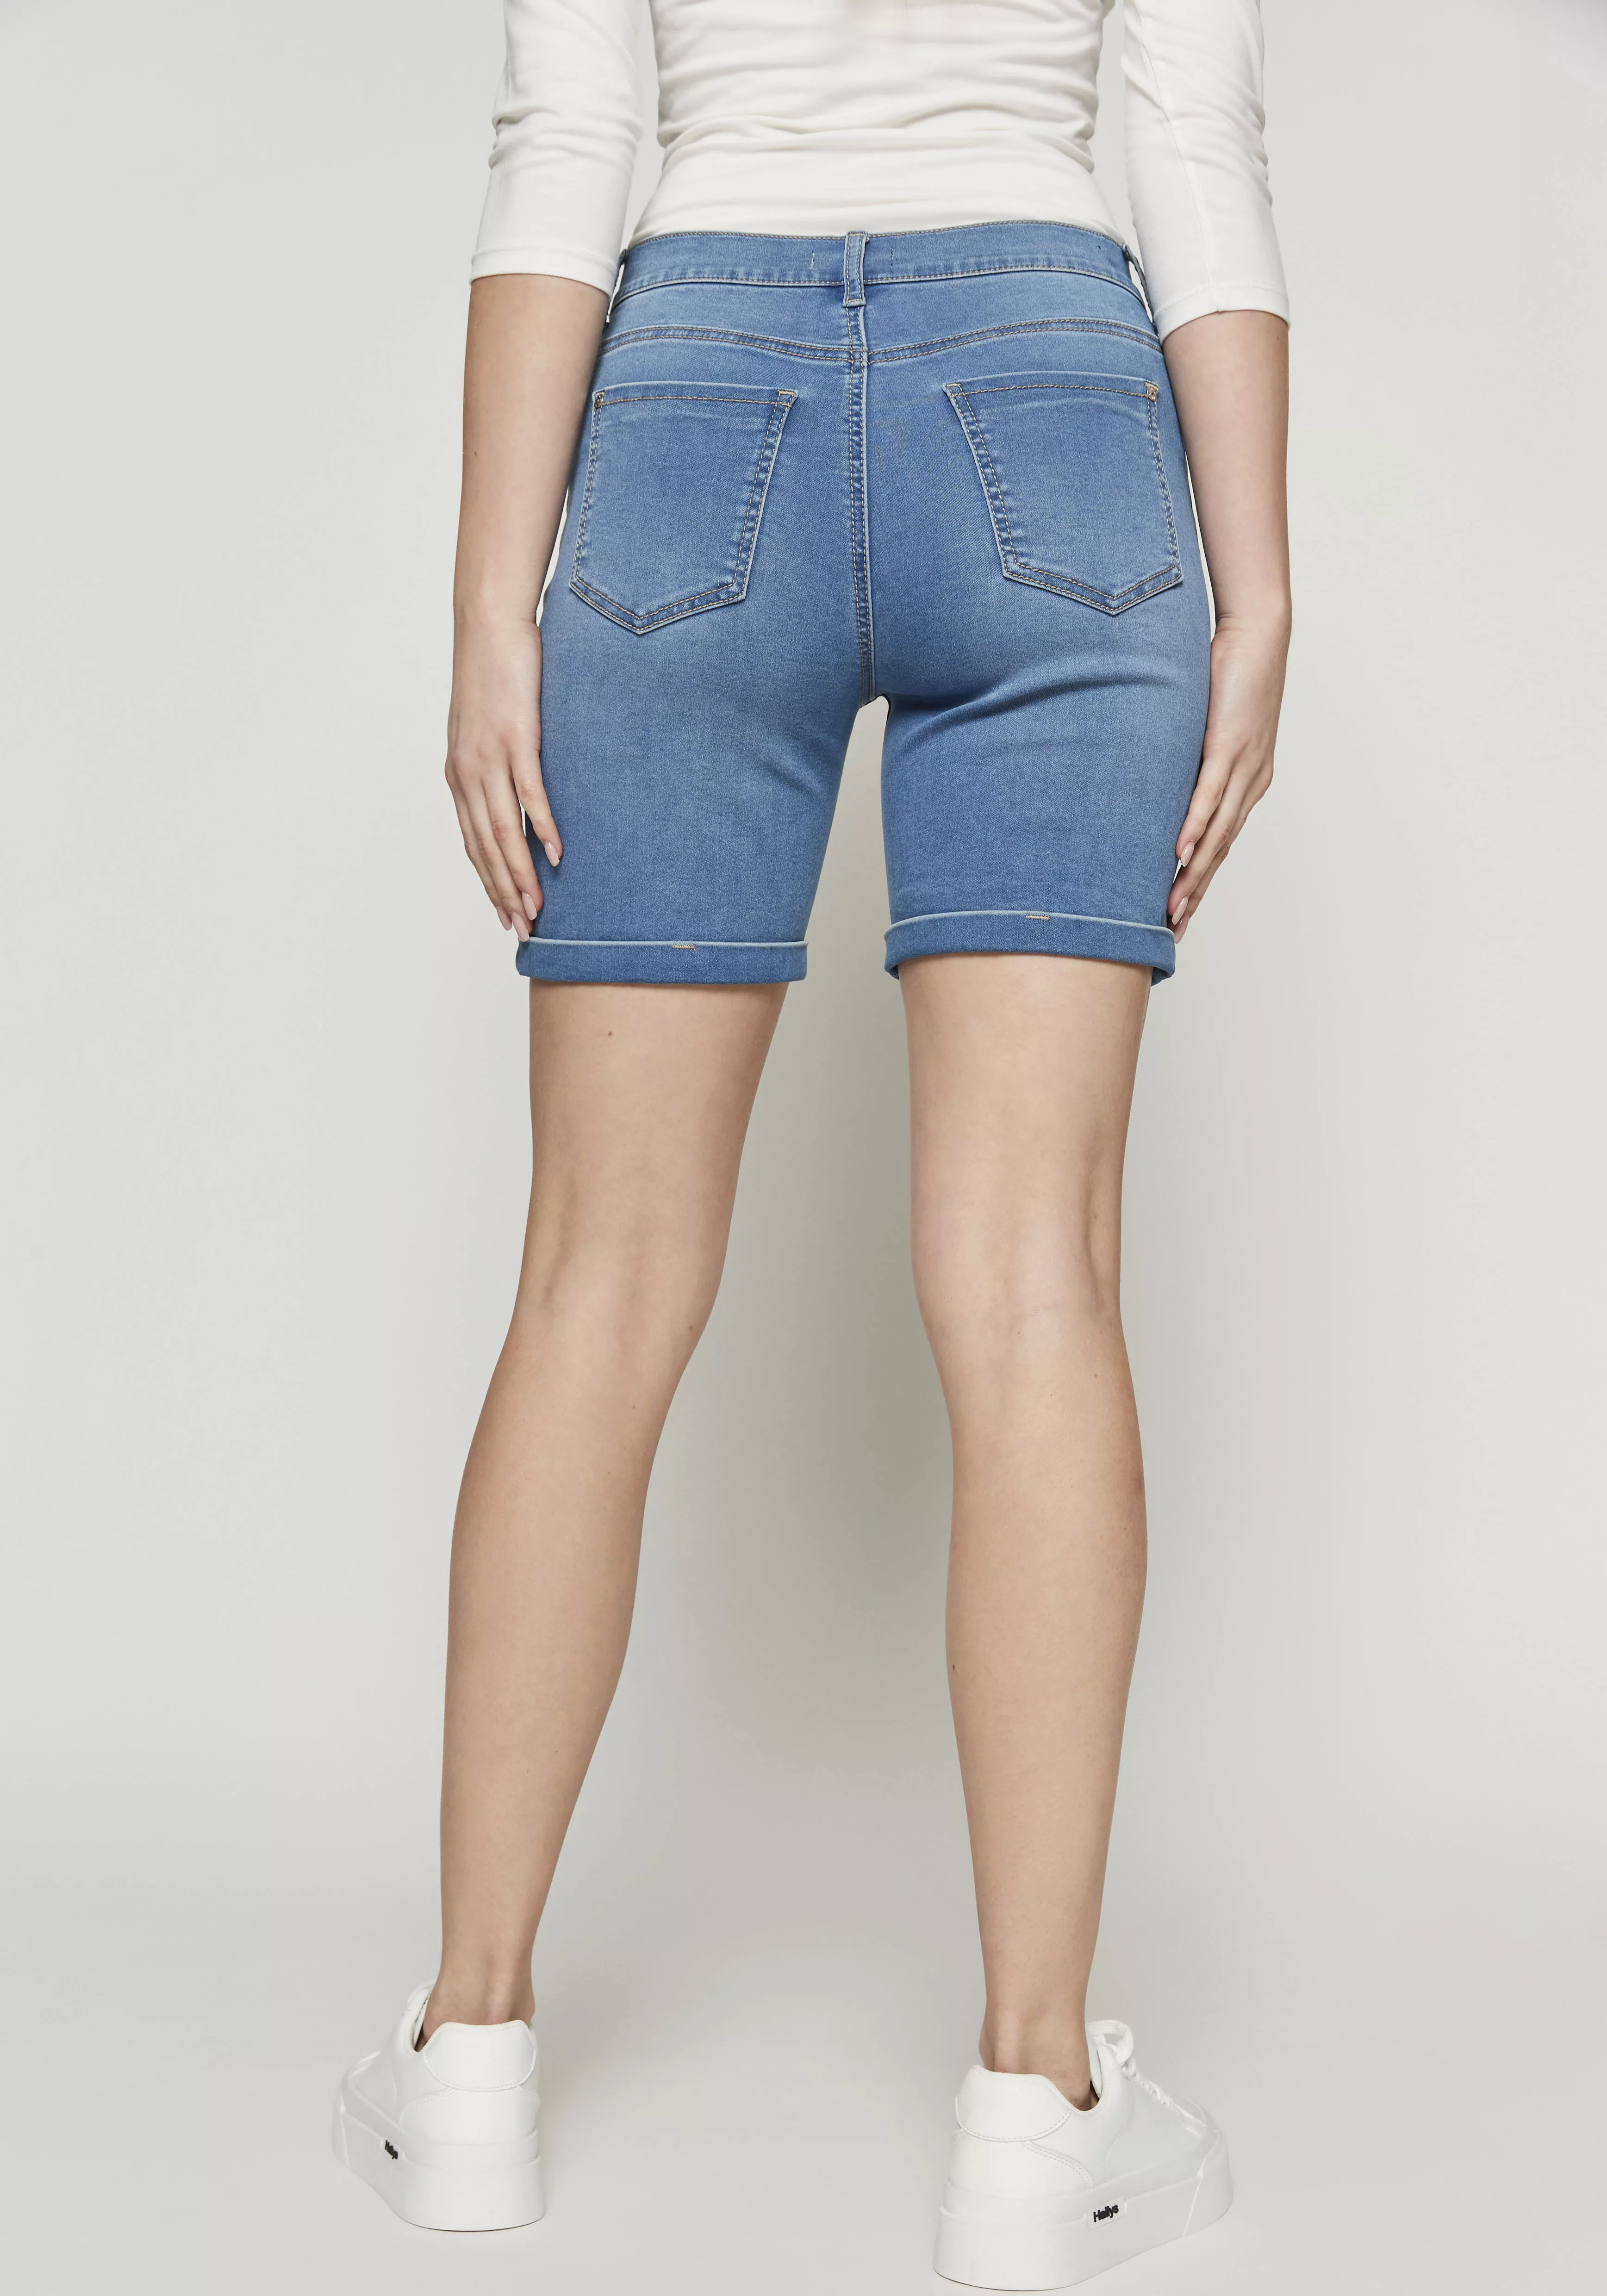 HaILY’S Boyfriend-Jeans Shorts Denim Mid Waist Bermudas 7446 in Blau-2 günstig online kaufen